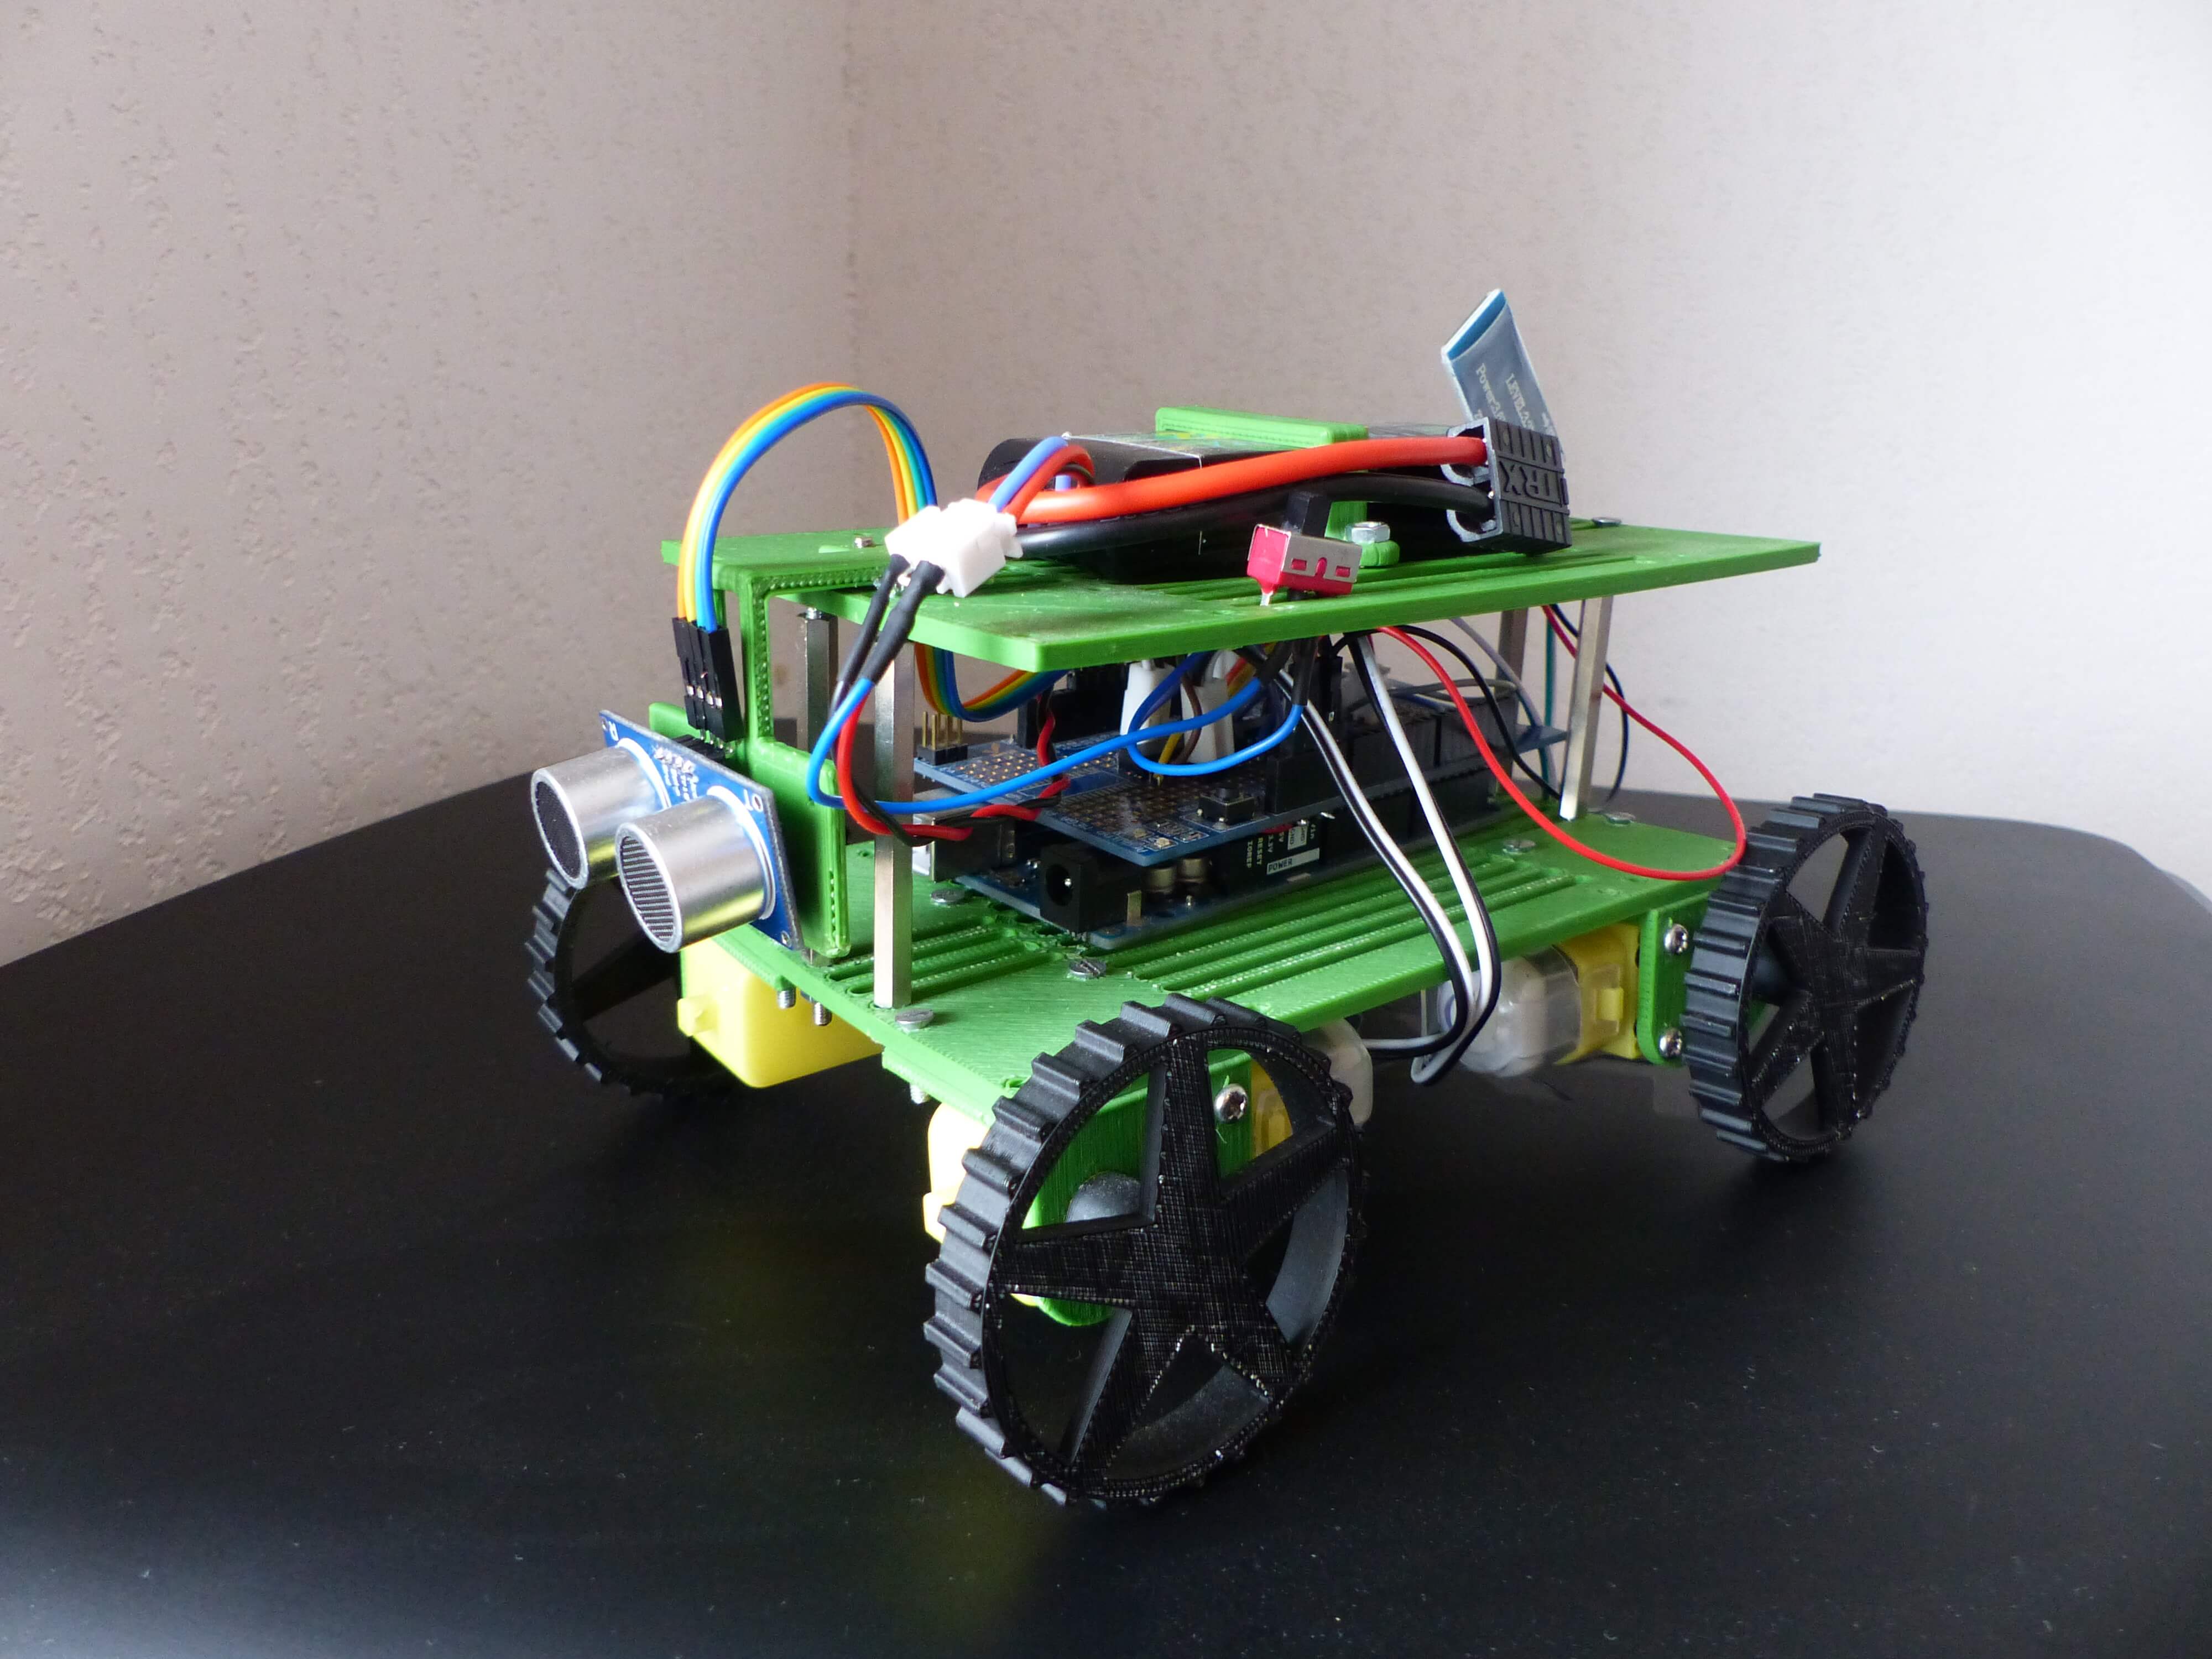 robot autonome rovy pouvant détecter et éviter les obstacles